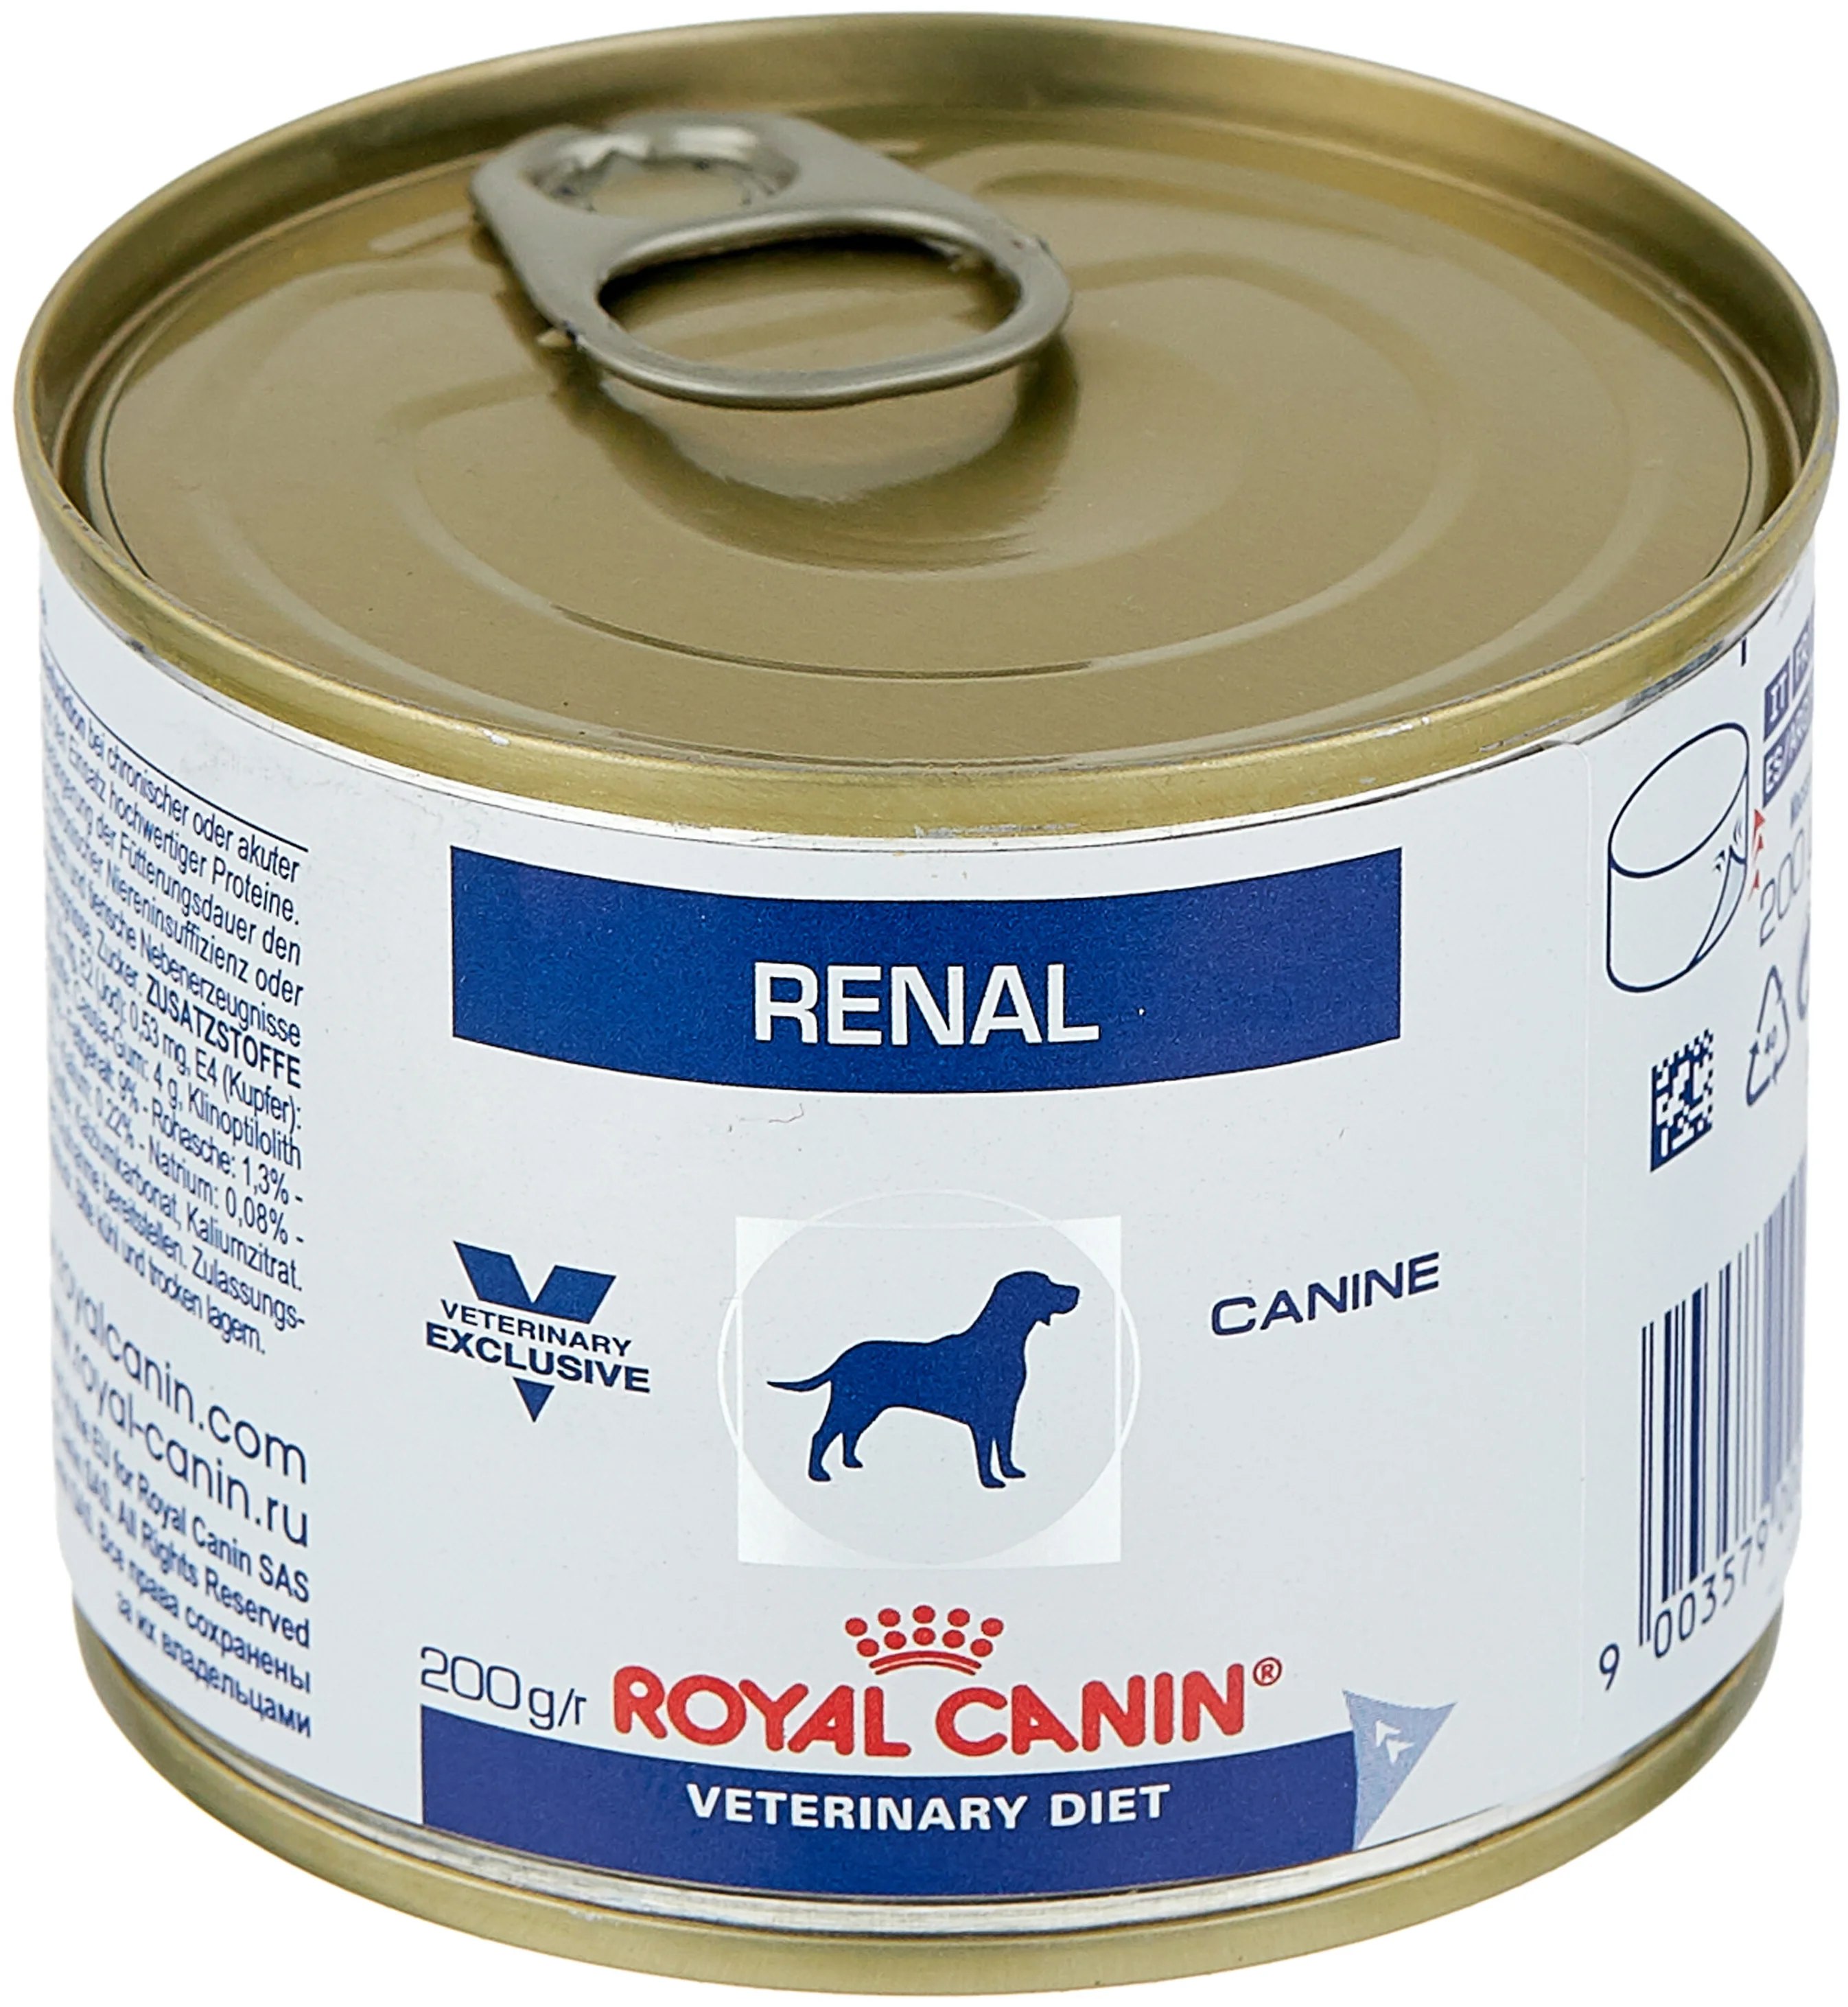 Royal Canin "Renal" - класс ингредиентов: премиум